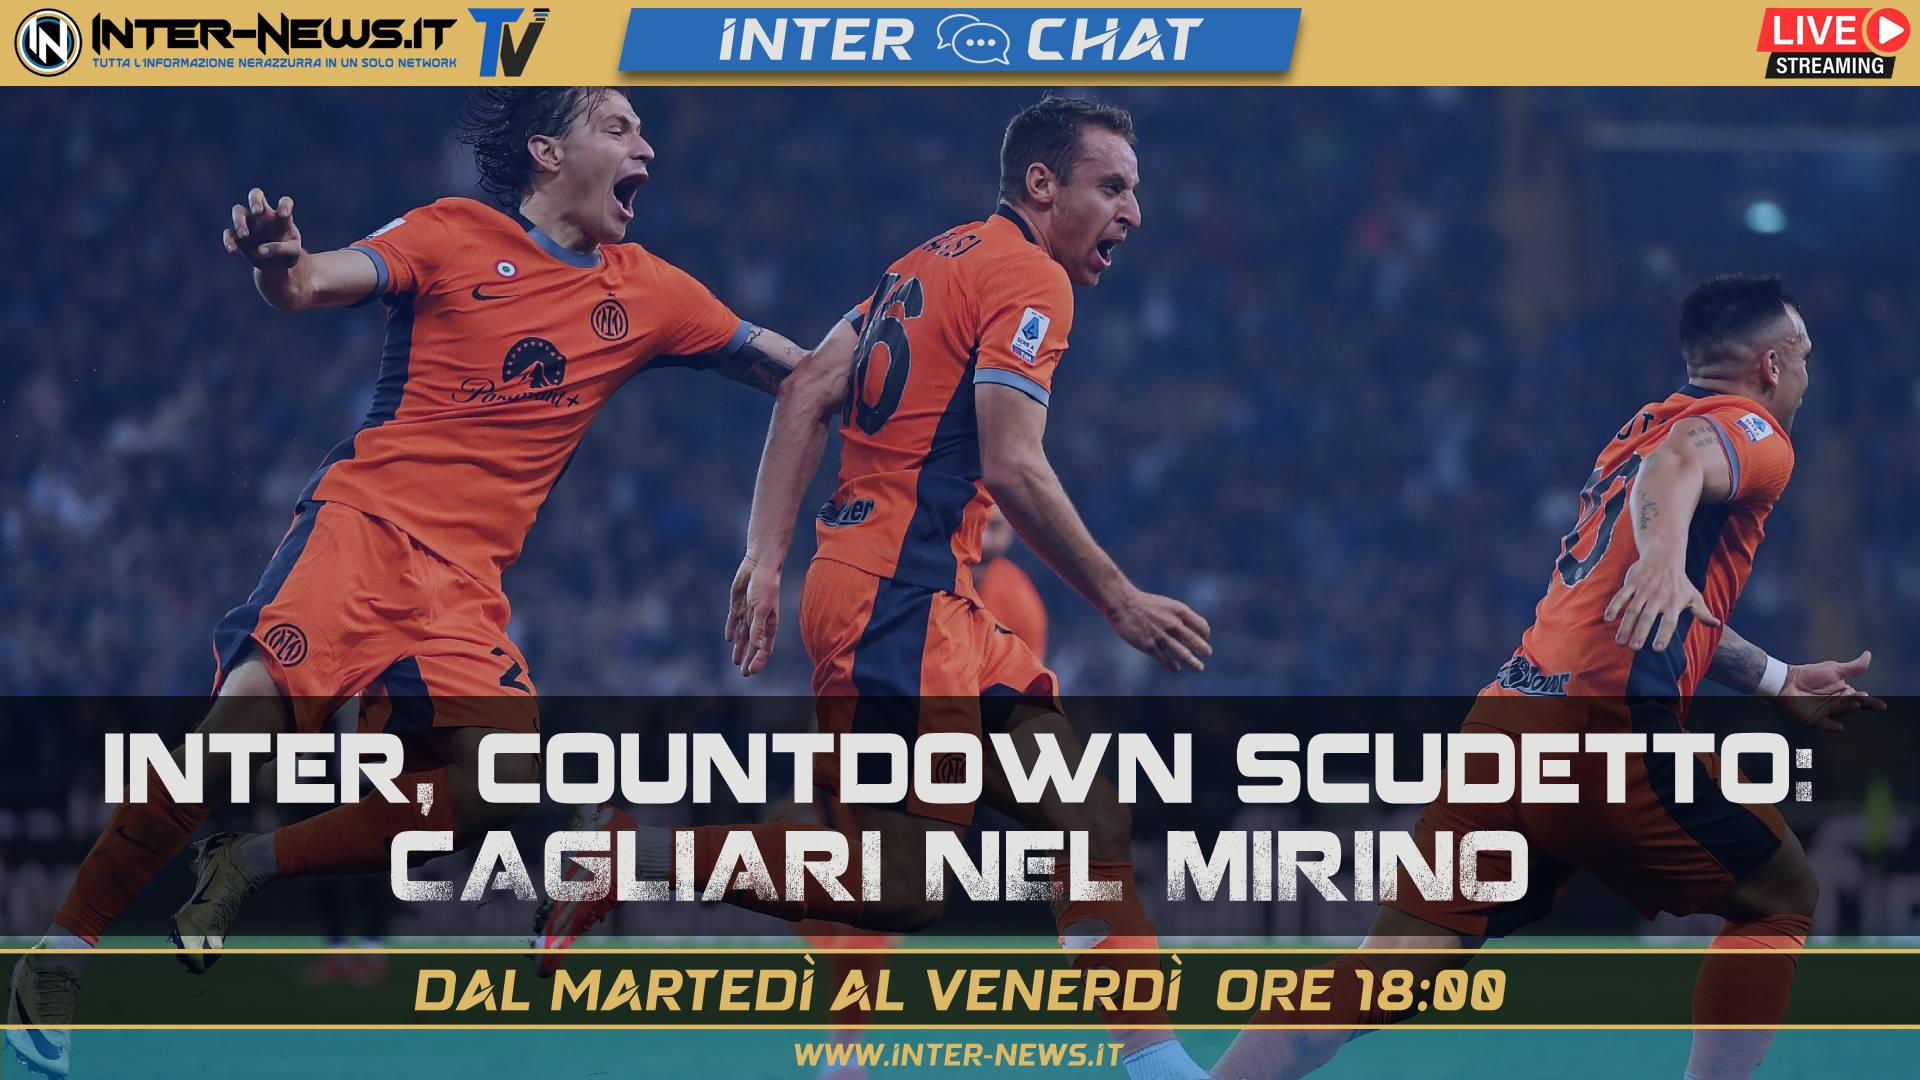 VIDEO – Inter, Cagliari nel mirino! Countdown scudetto | Inter Chat